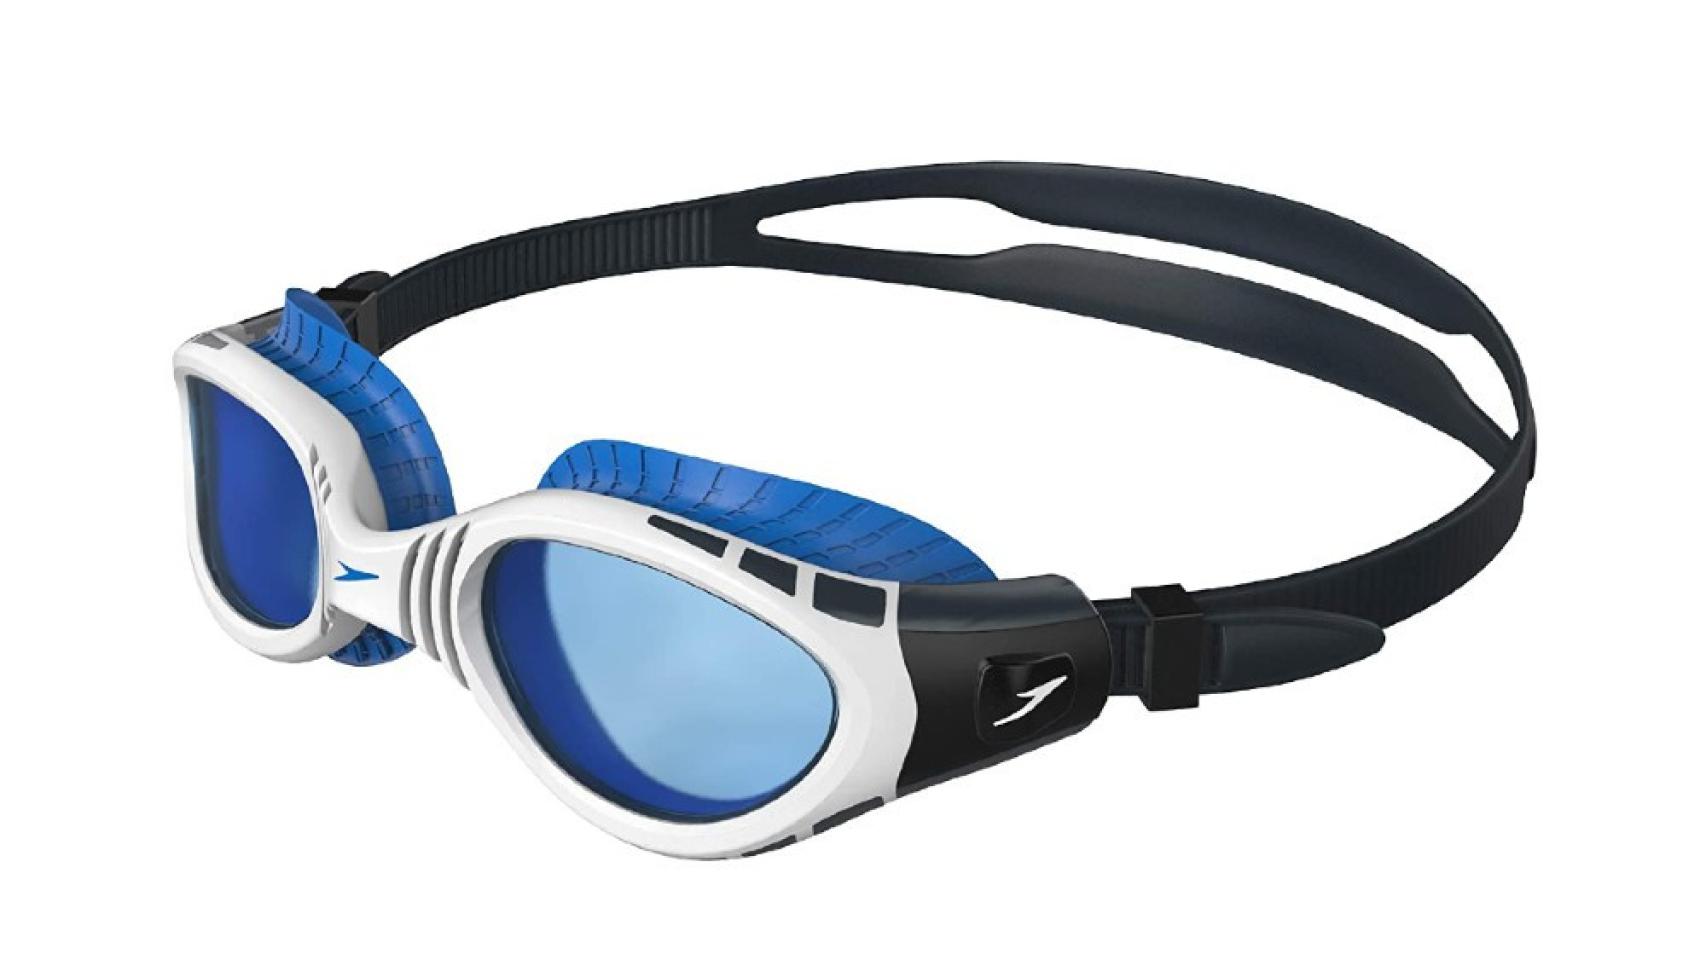 Prolonga la vida de tus gafas de natación con estos trucos - Bulevip